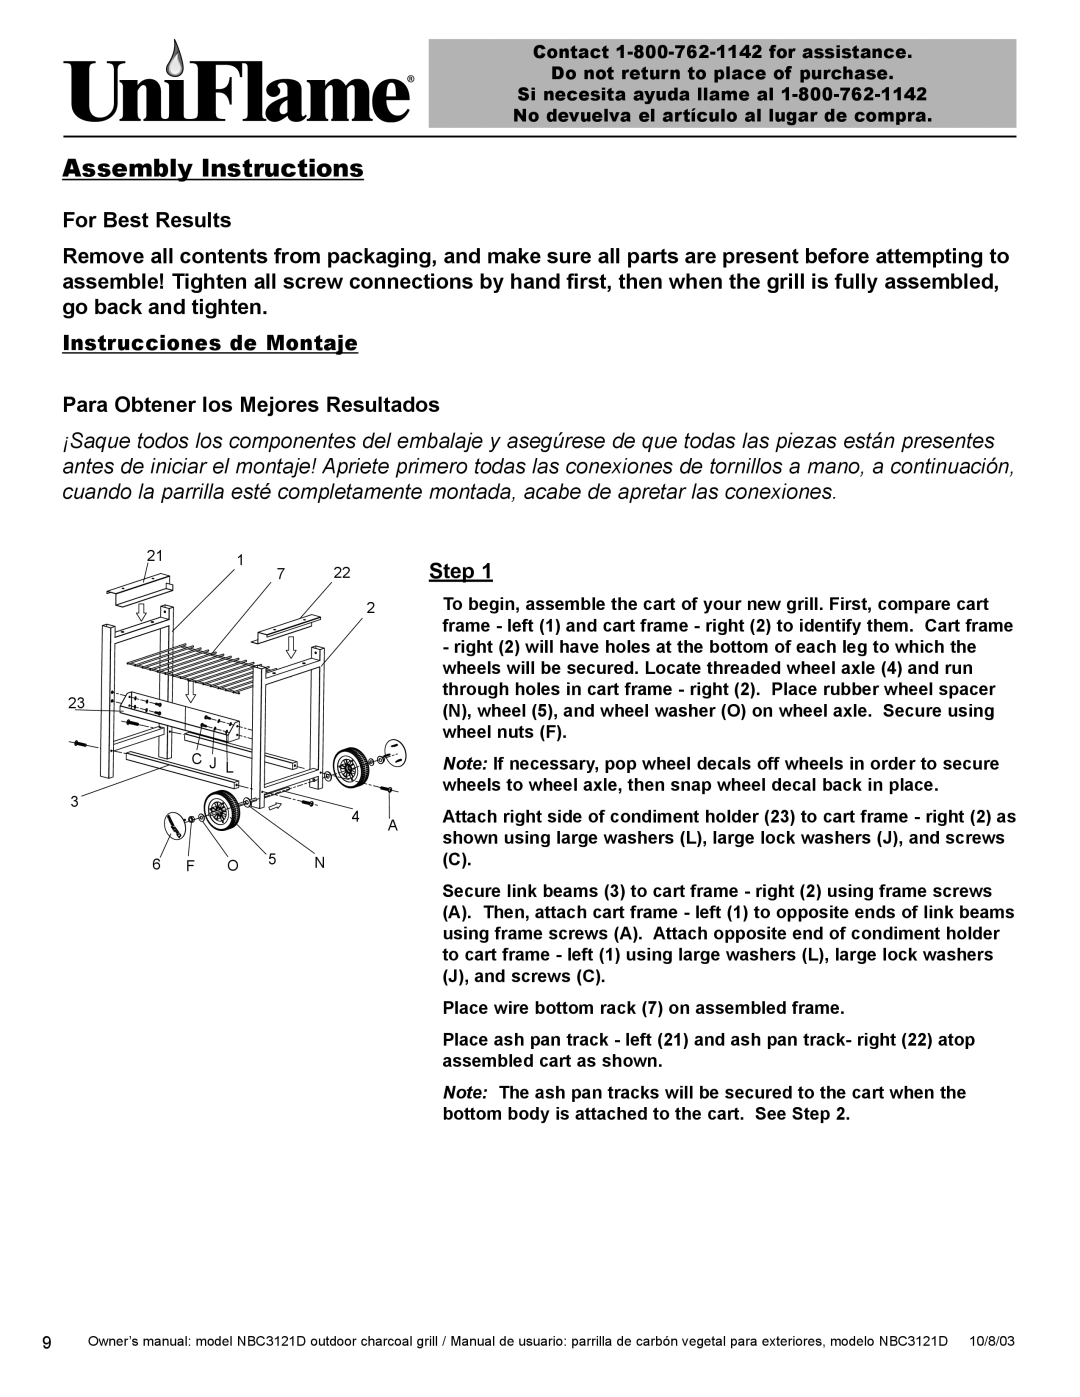 Blue Rhino NBC3121D Assembly Instructions, For Best Results, Instrucciones de Montaje Para Obtener los Mejores Resultados 